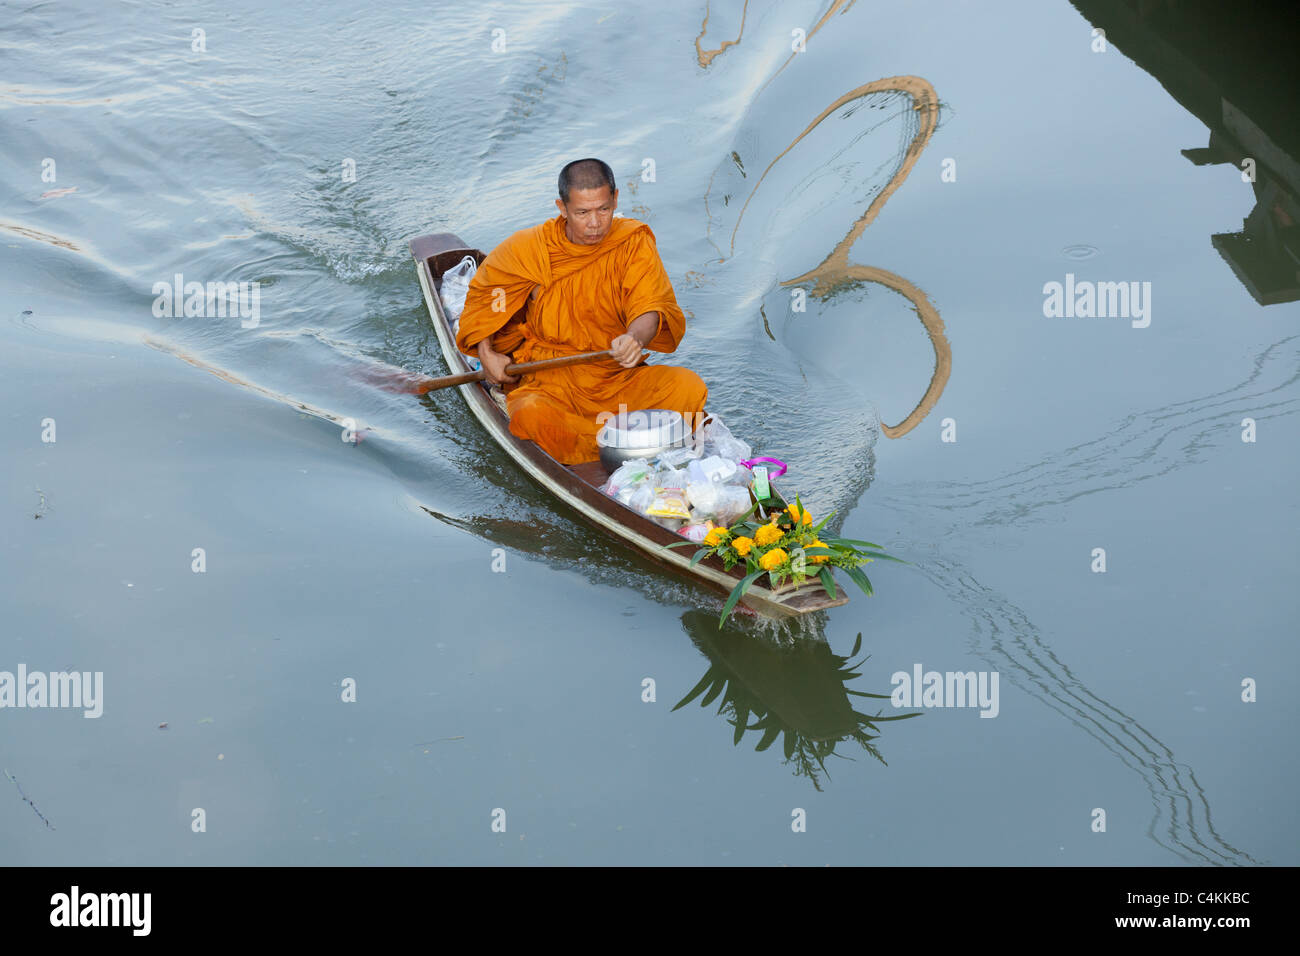 Thai monaco buddista barca a remi di prima mattina al mercato galleggiante di Amphawa, Tailandia a prendere la mattina ed offre cibo. Foto Stock